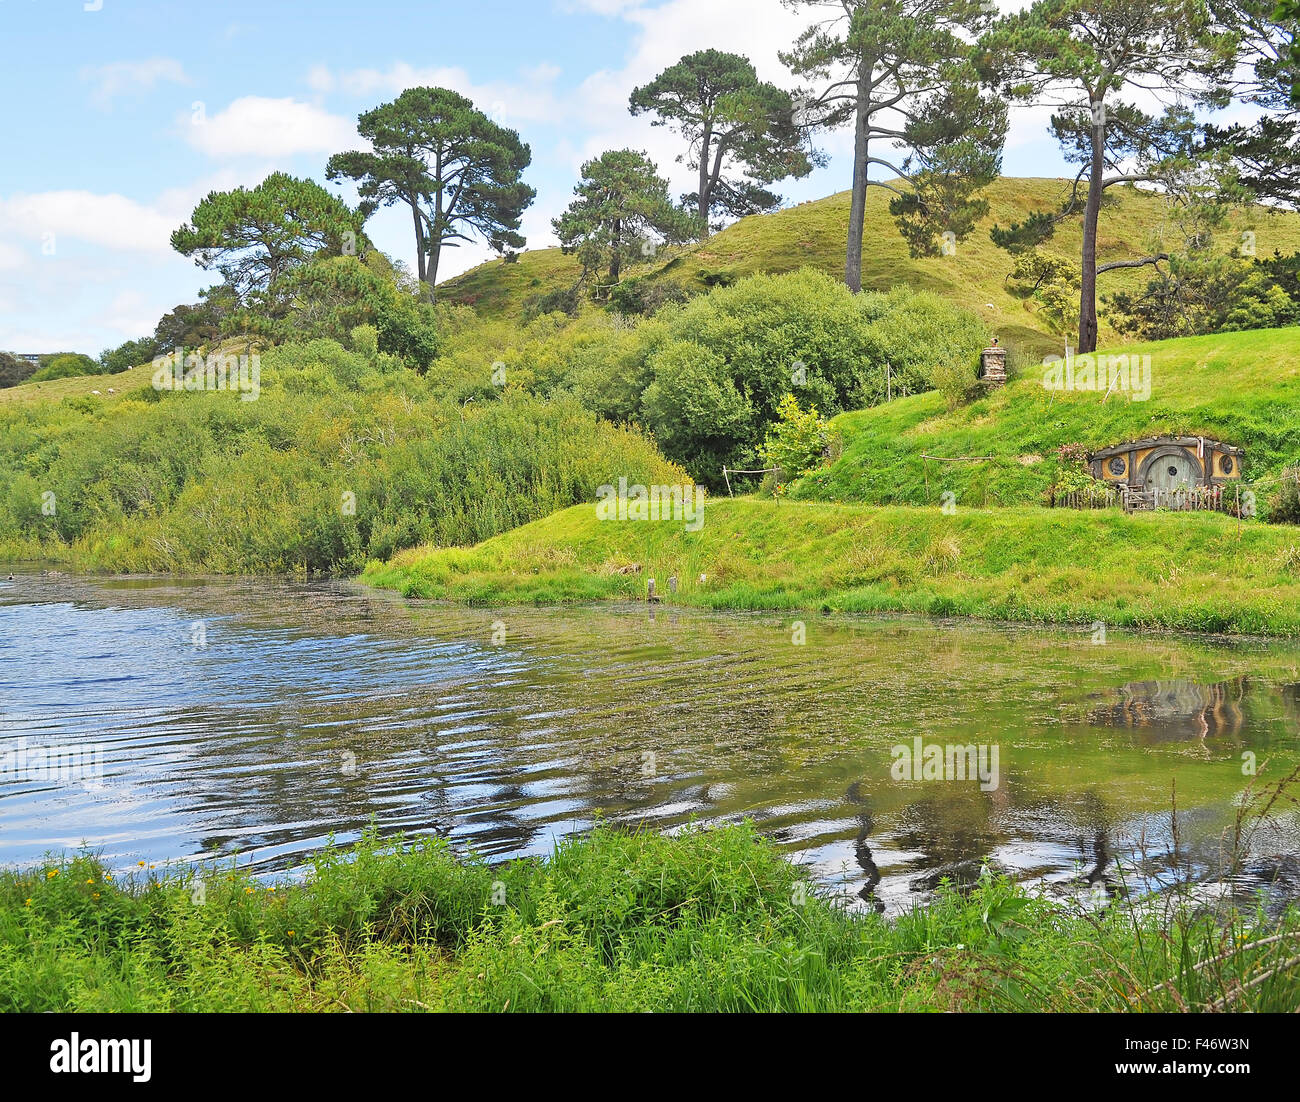 Hobbiton, Shire, New Zealand. Reflection of house on lake. Stock Photo